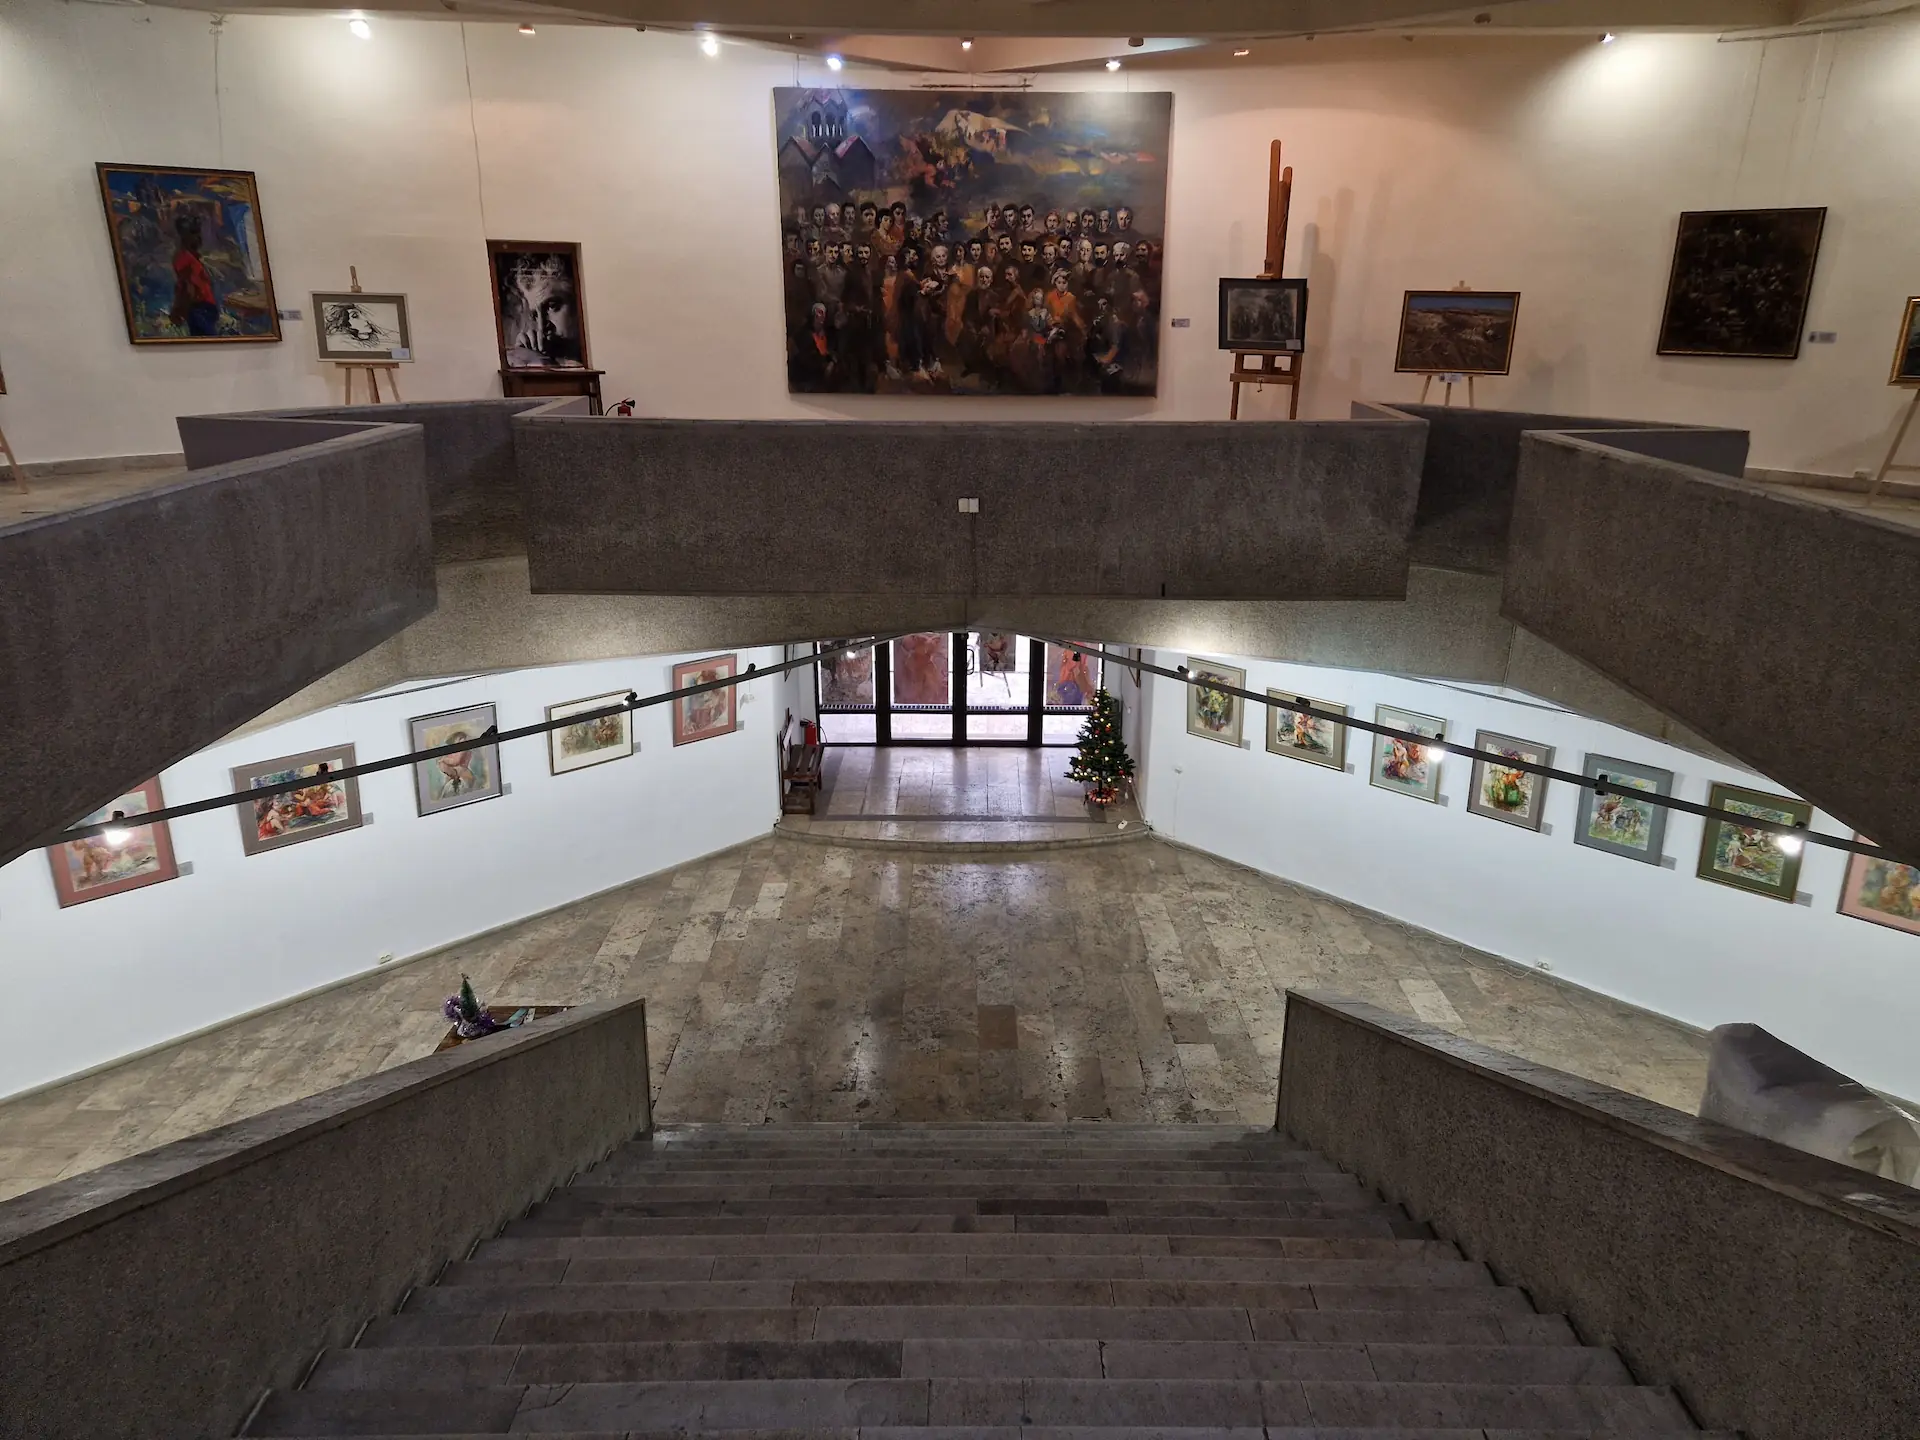 Vue des deux étages du musée d'Eduard Isabekyan. Il y a de plus petits tableaux au premier étage et de plus grandes fresques au second étage.